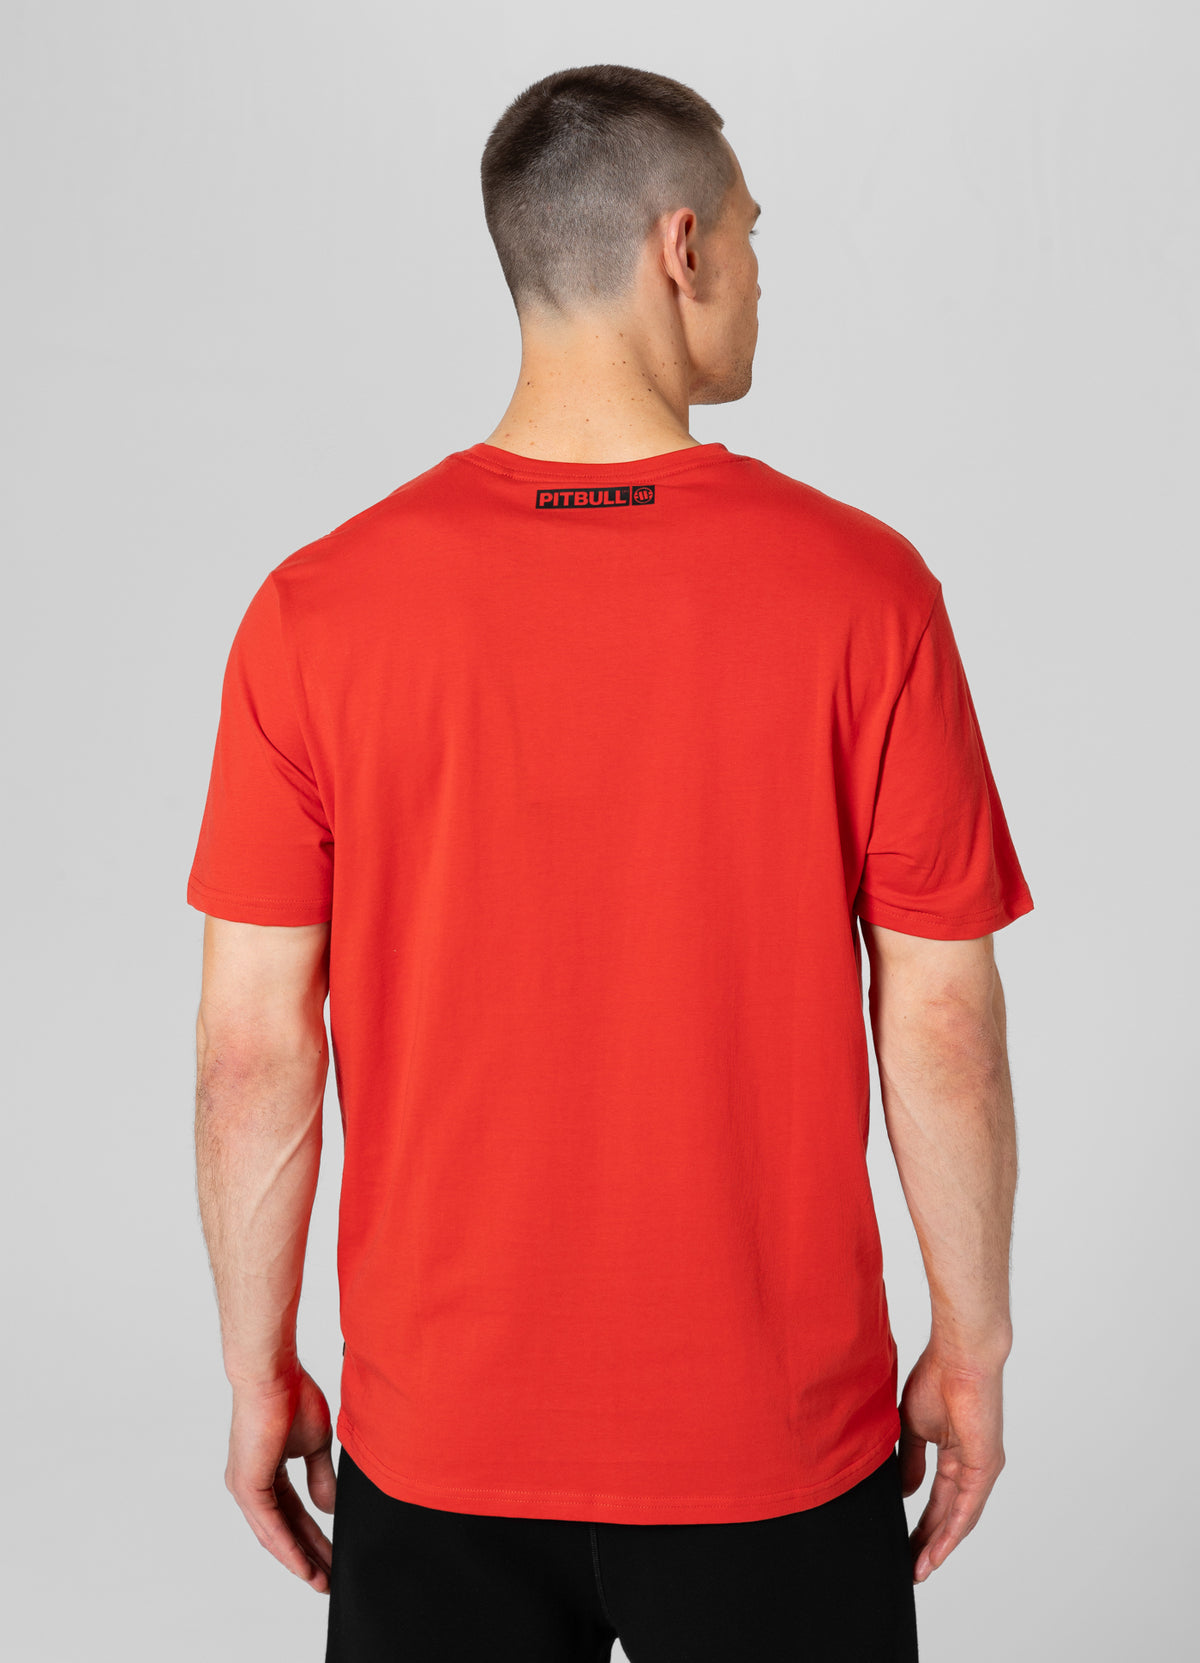 HILLTOP Lightweight Flame Red T-shirt - Pitbullstore.eu